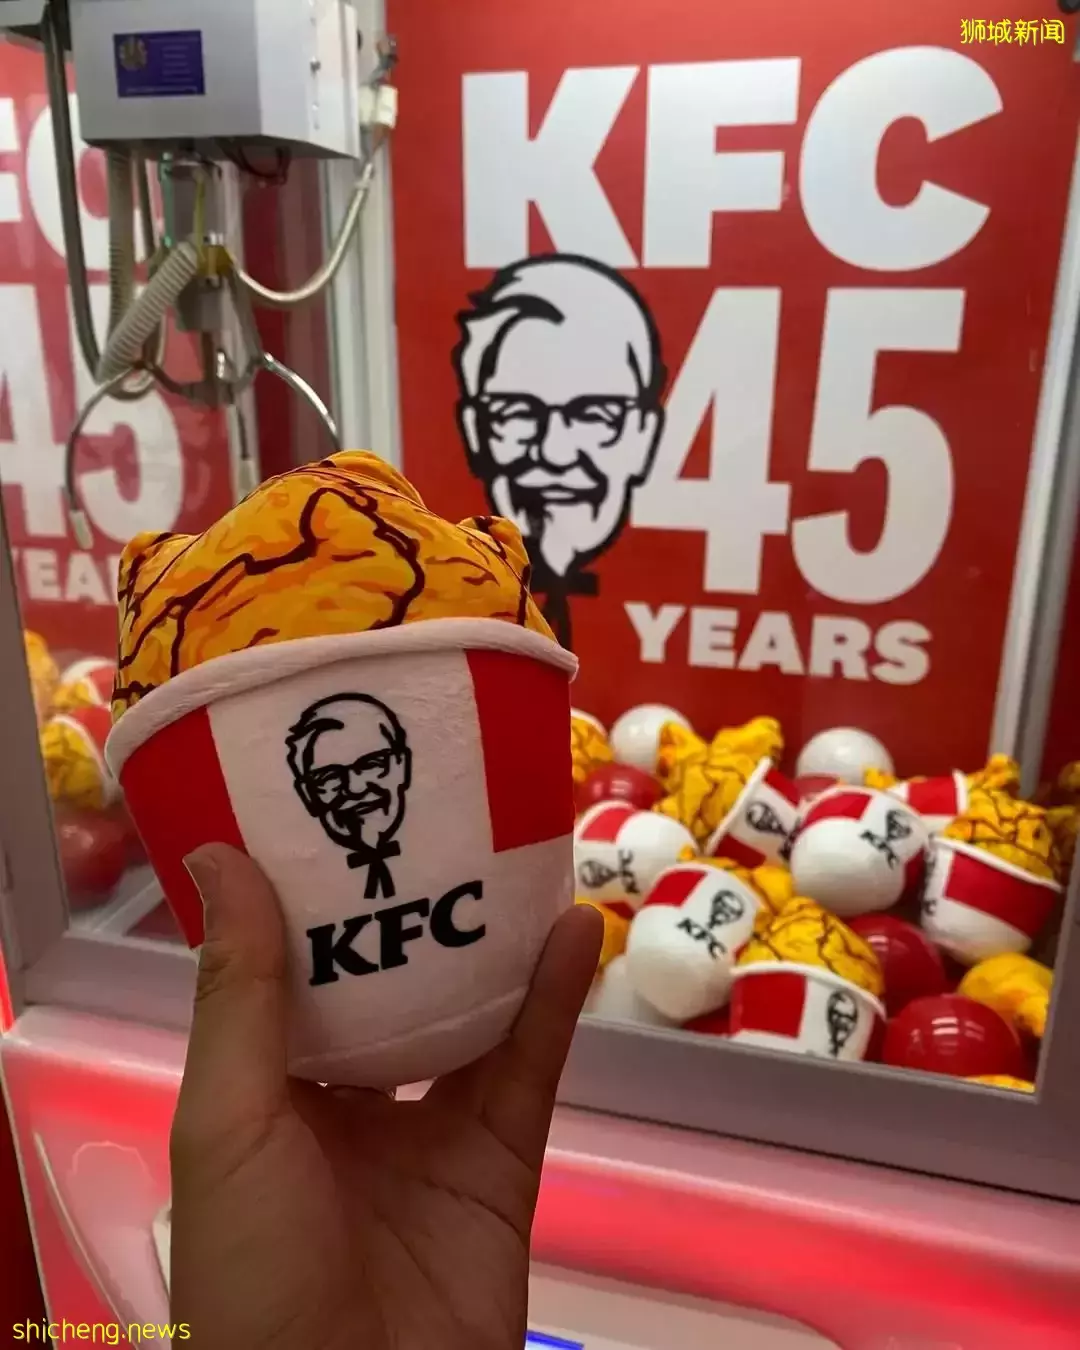 KFC 45周年快閃活動@VivoCity！前4500名可免費獲得兩塊炸雞哦